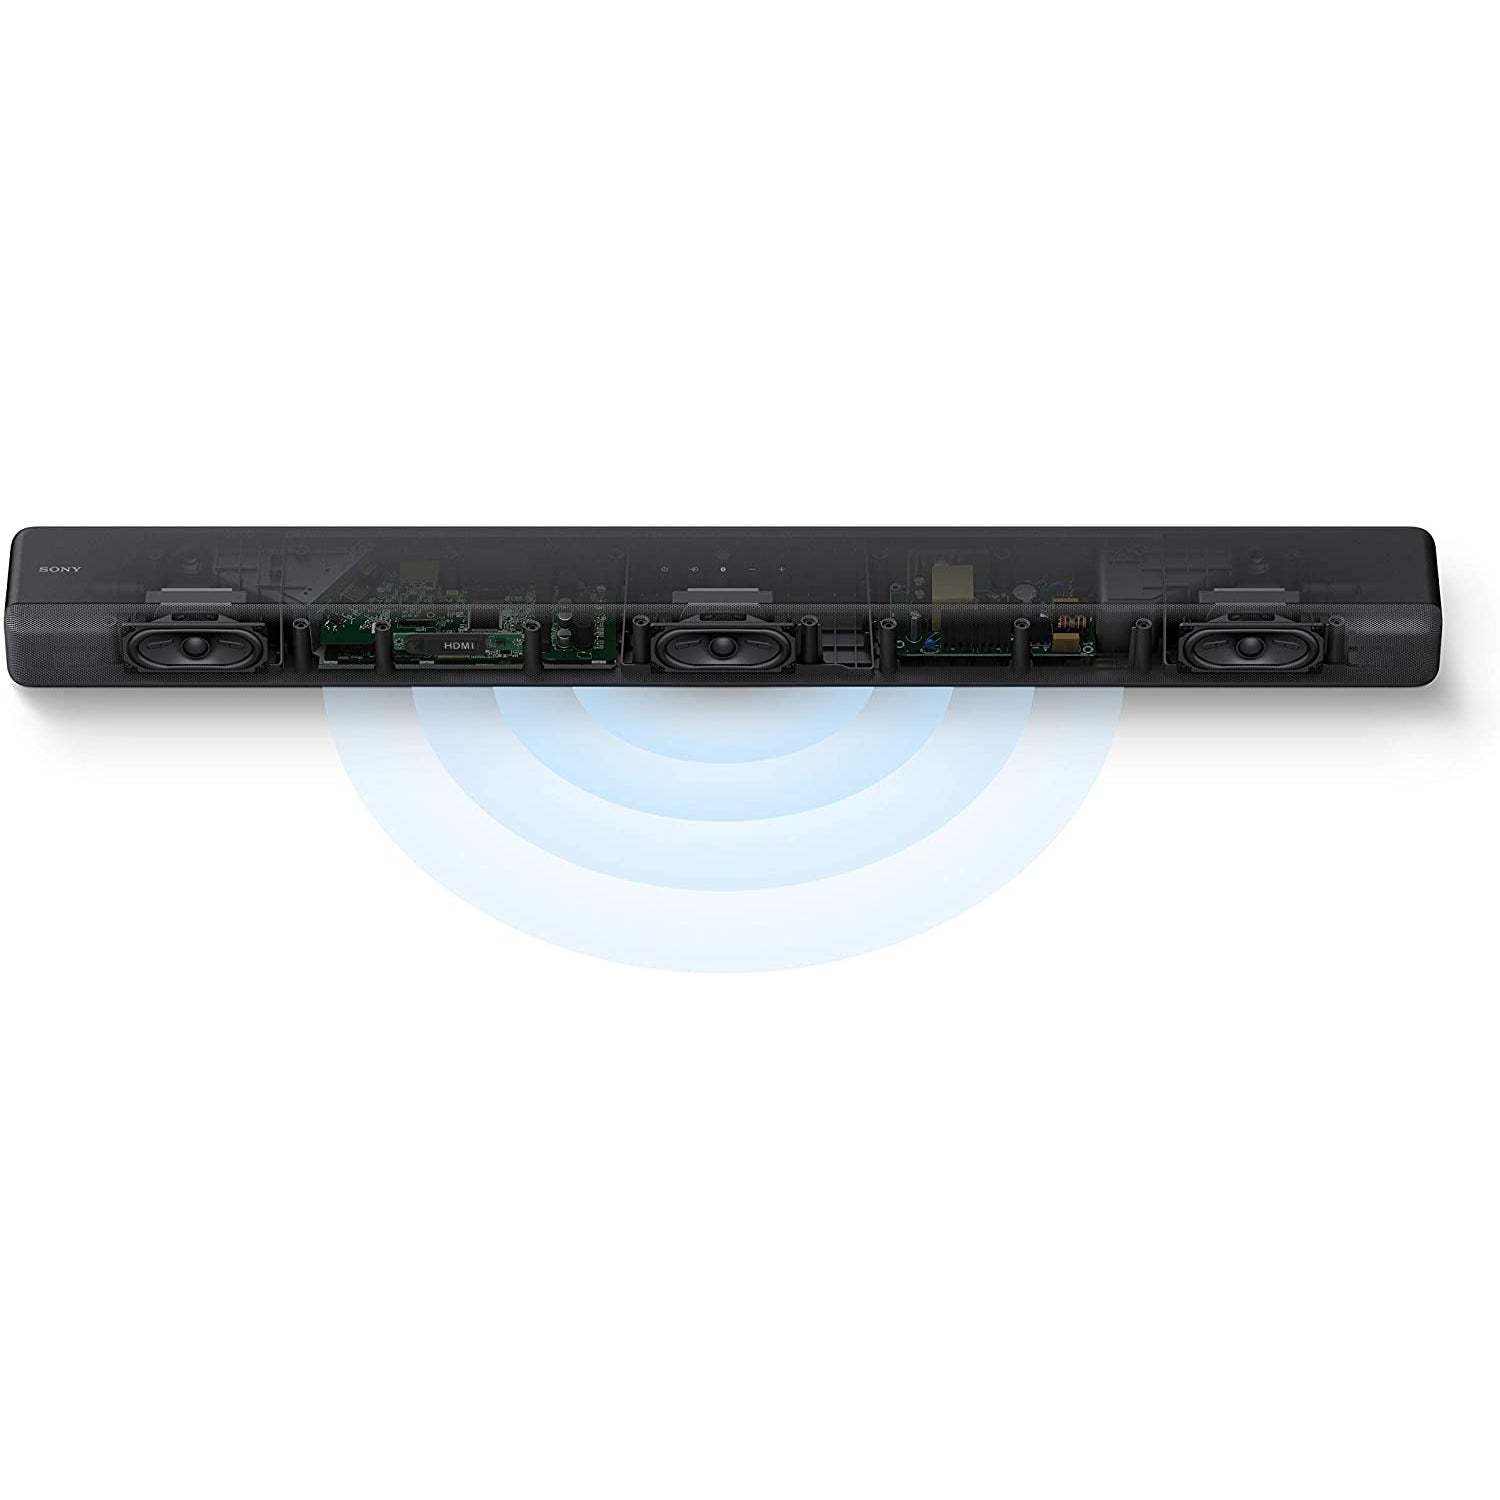 Sony HT-G700 Soundbar with Wireless Subwoofer